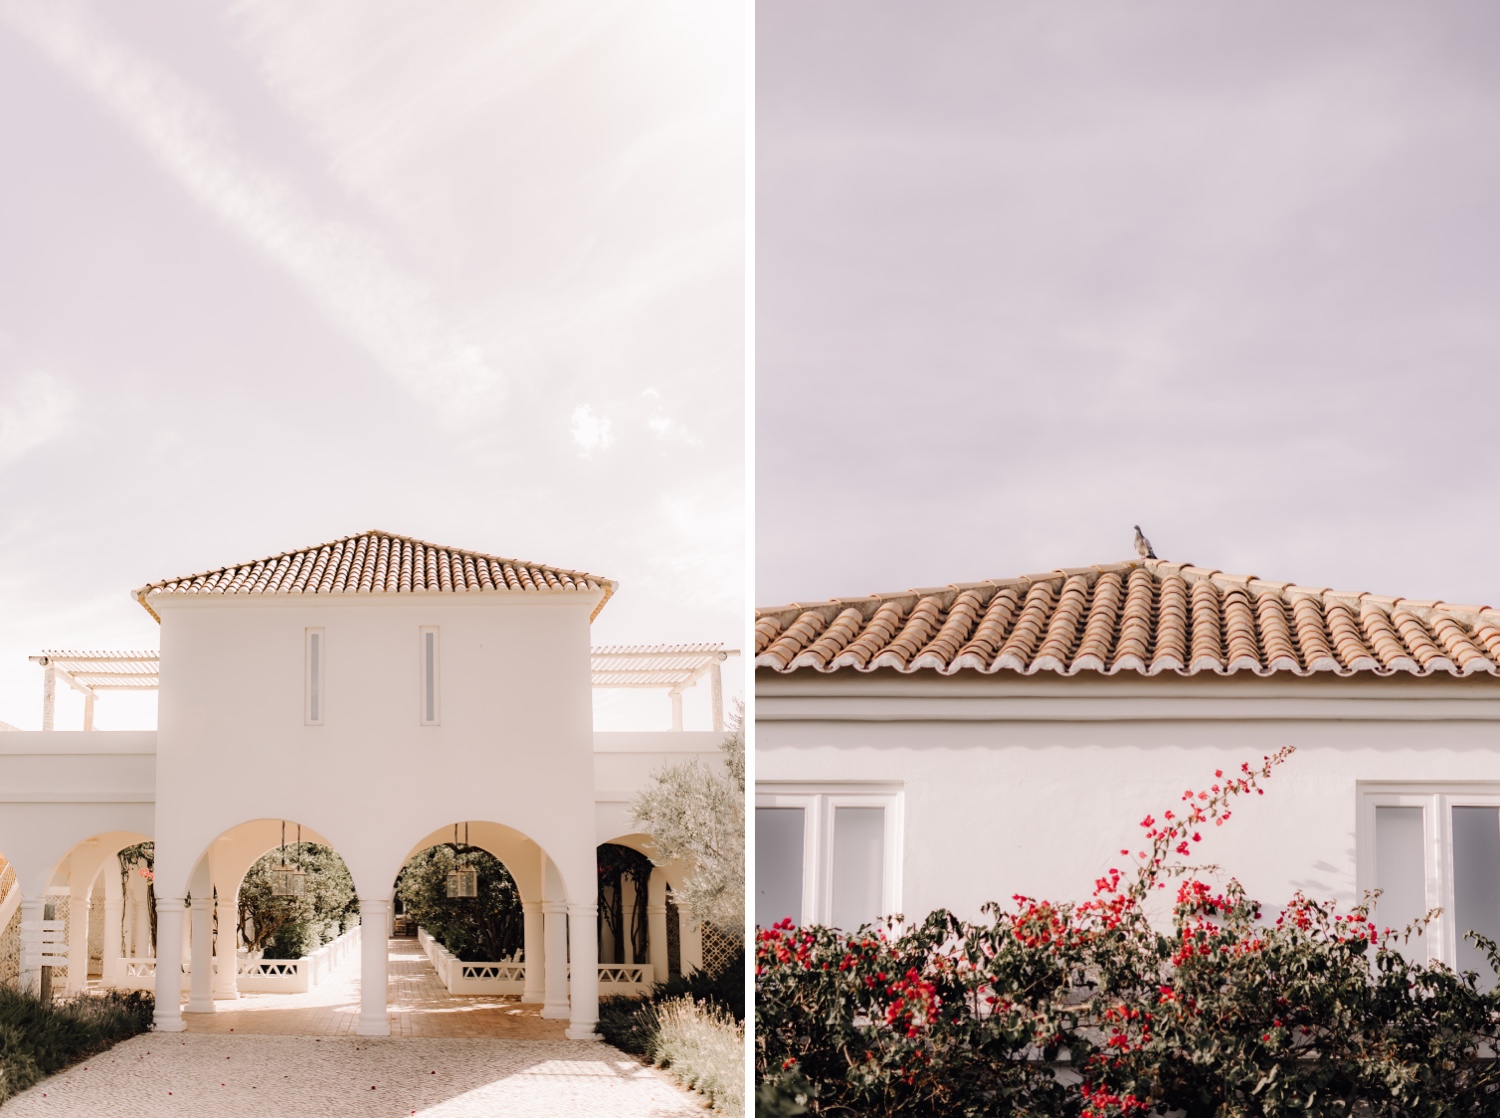 Huwelijksfotograaf buitenland - details van het landgoed van octant Vila Monte in Portugal